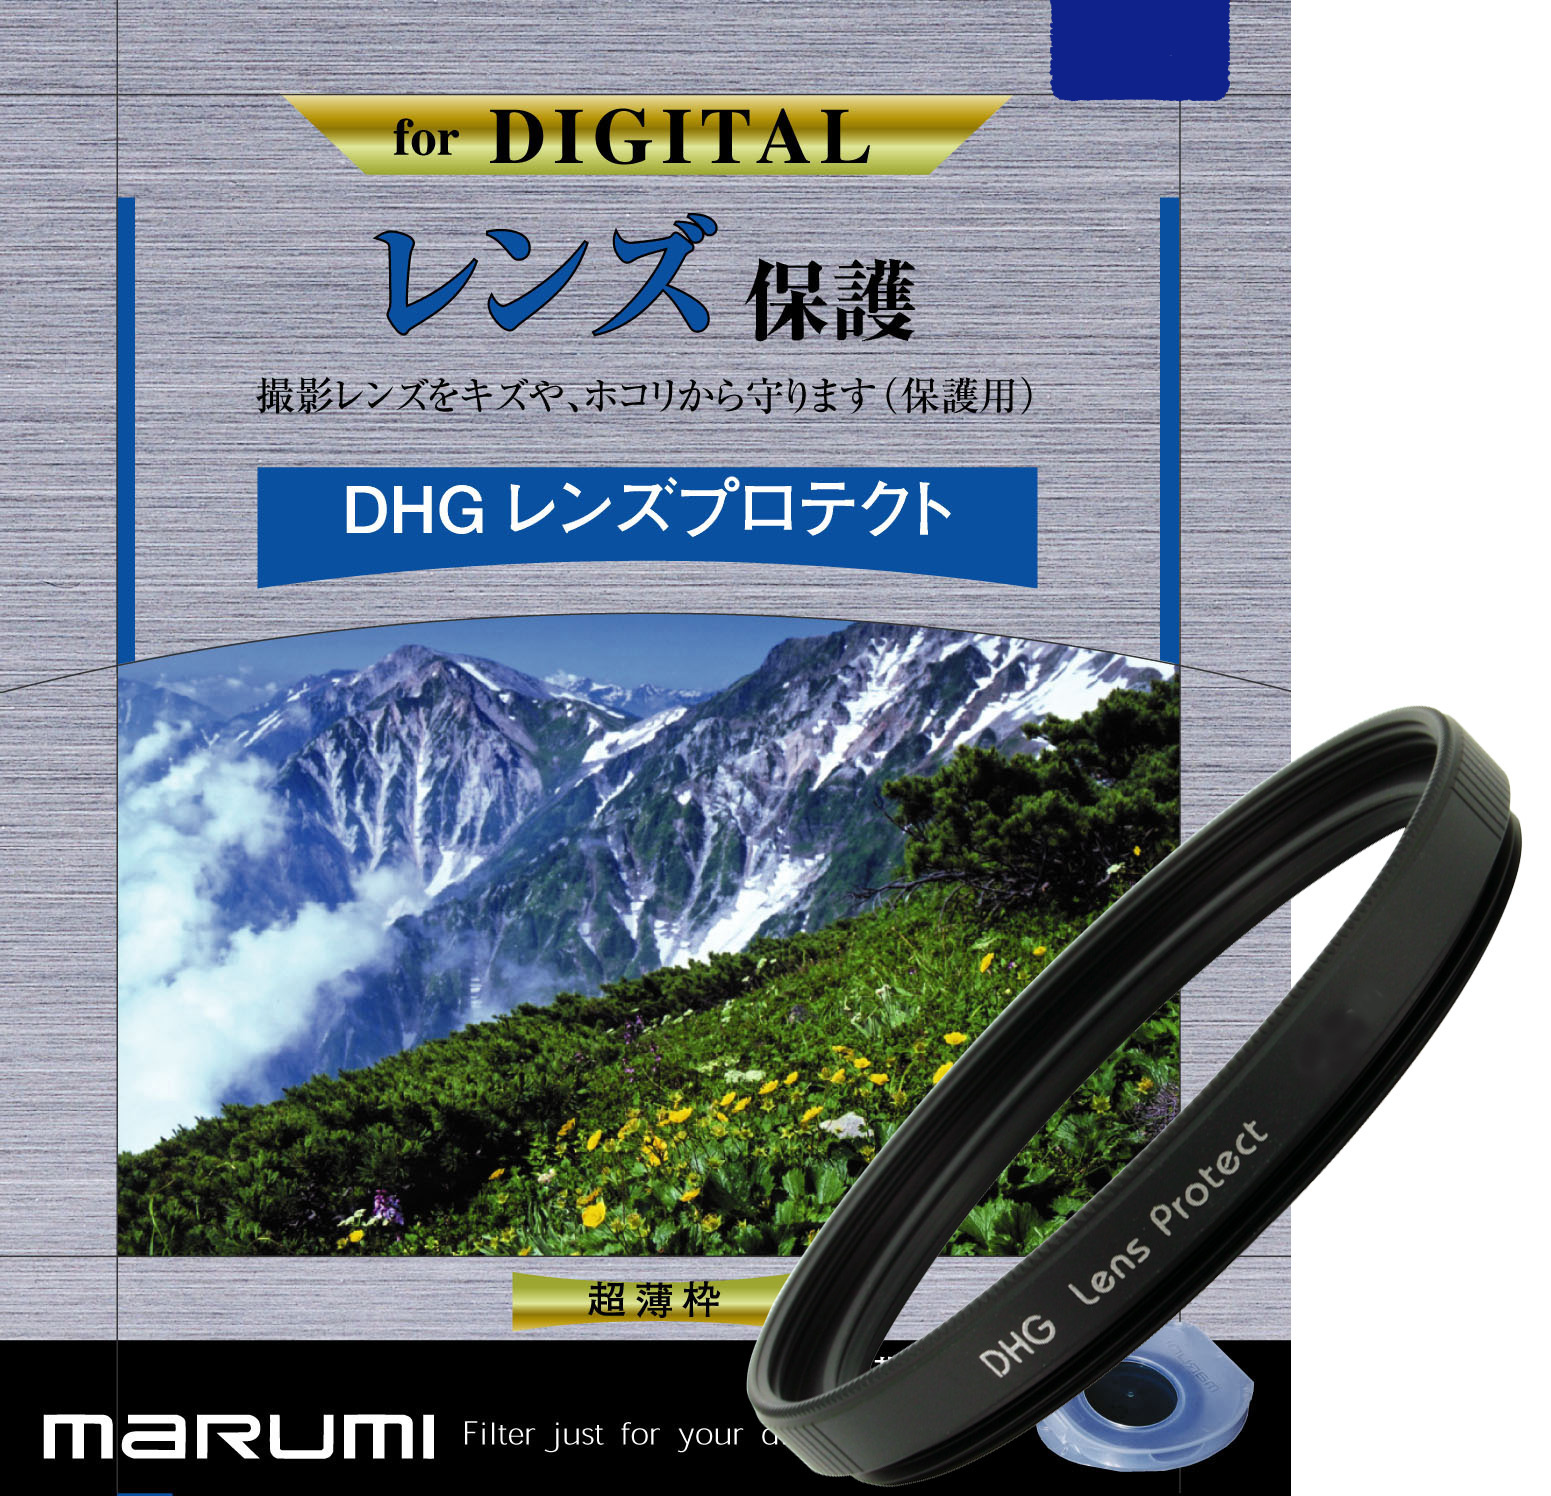 マルミ  DHG レンズプロテクト 58mm [プロテクター] MARUMI